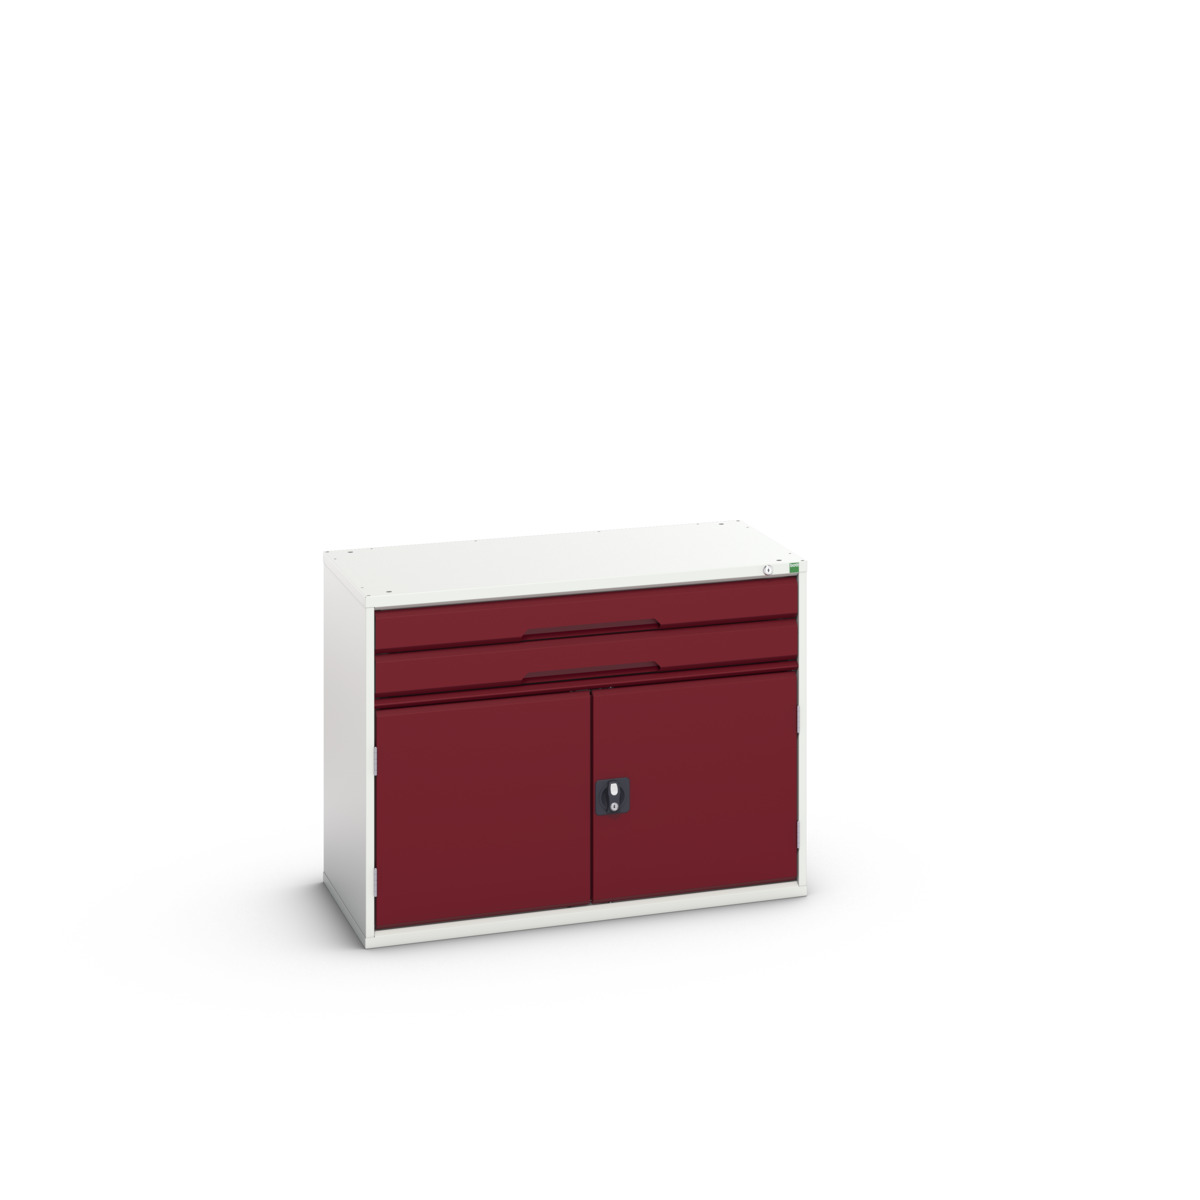 16925516.24 - verso drawer-door cabinet